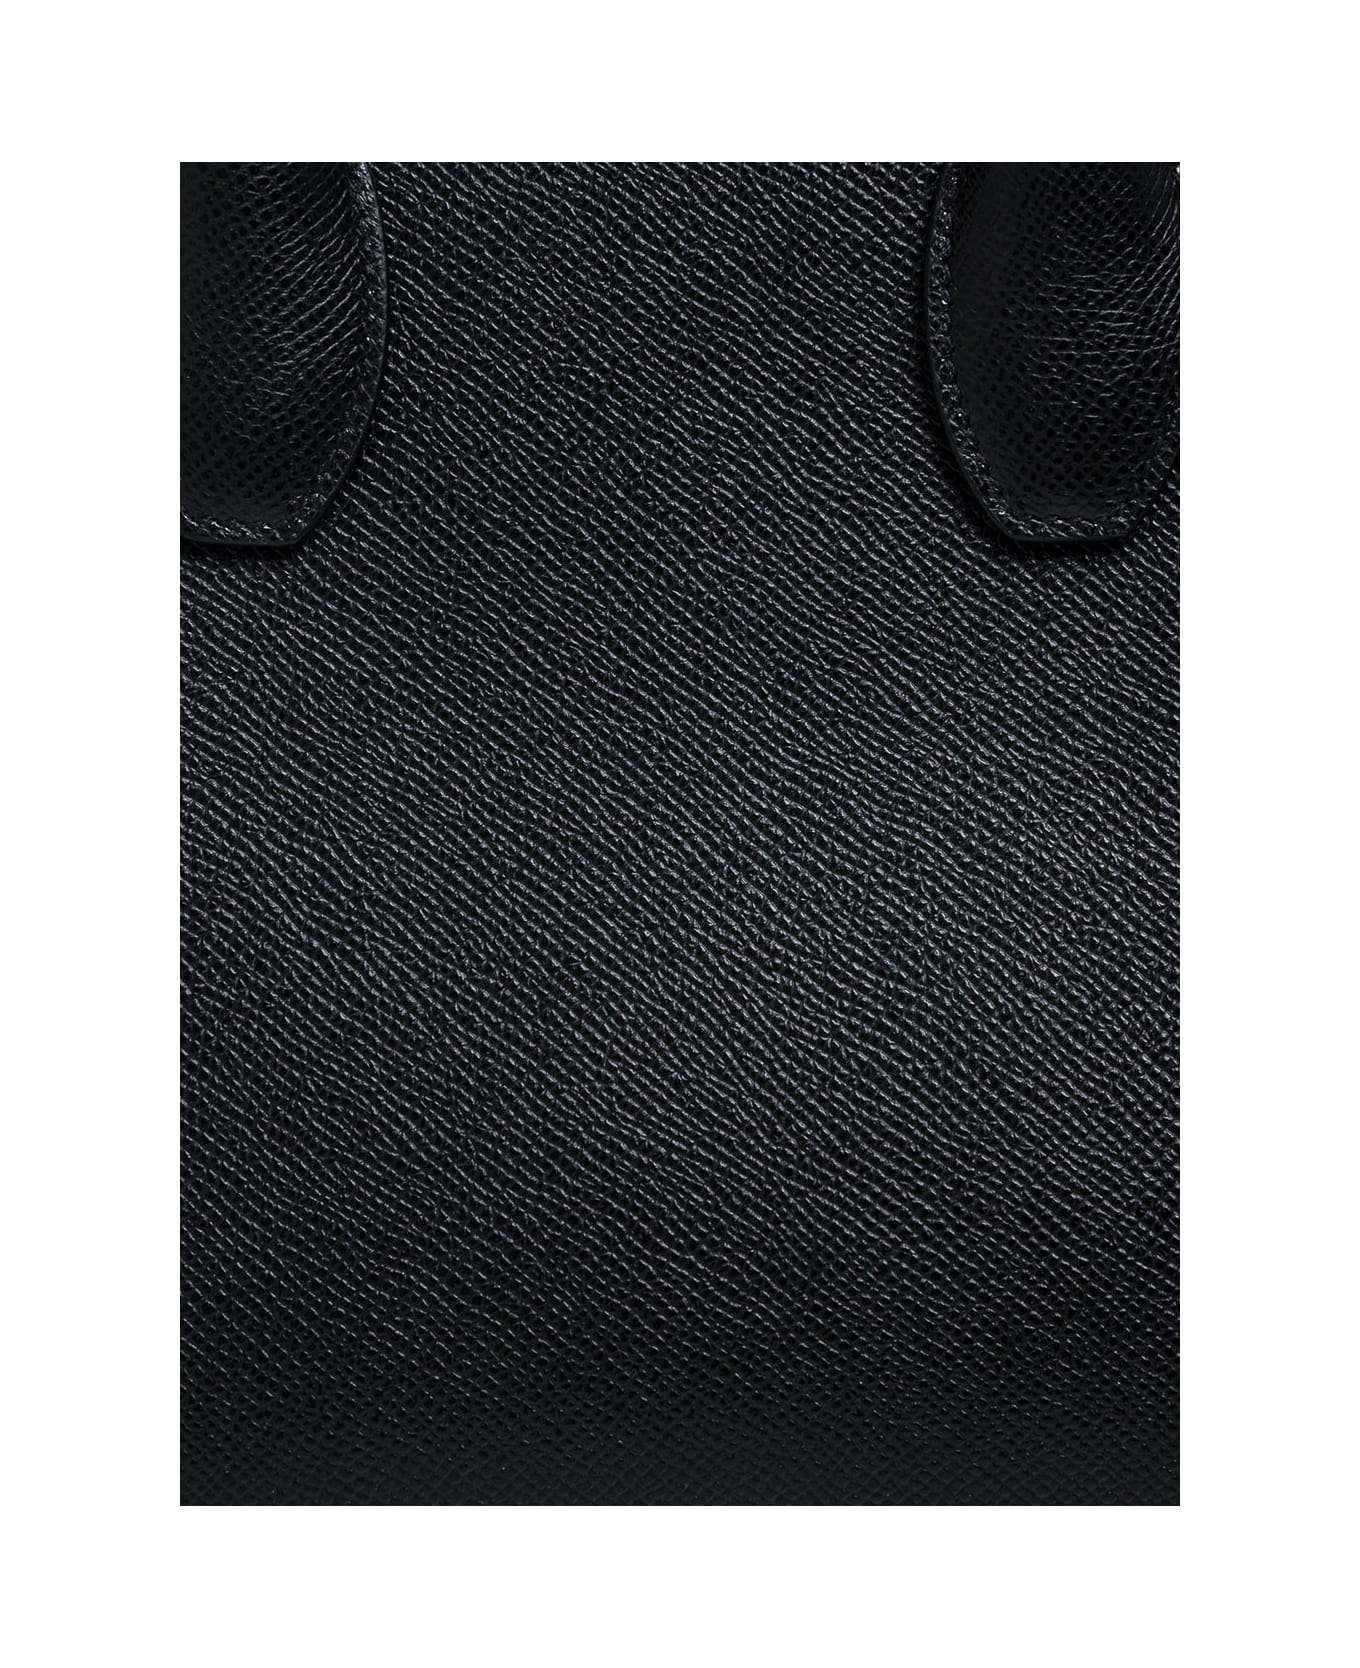 Ferragamo Studio Box Black Leather Handbag - Black